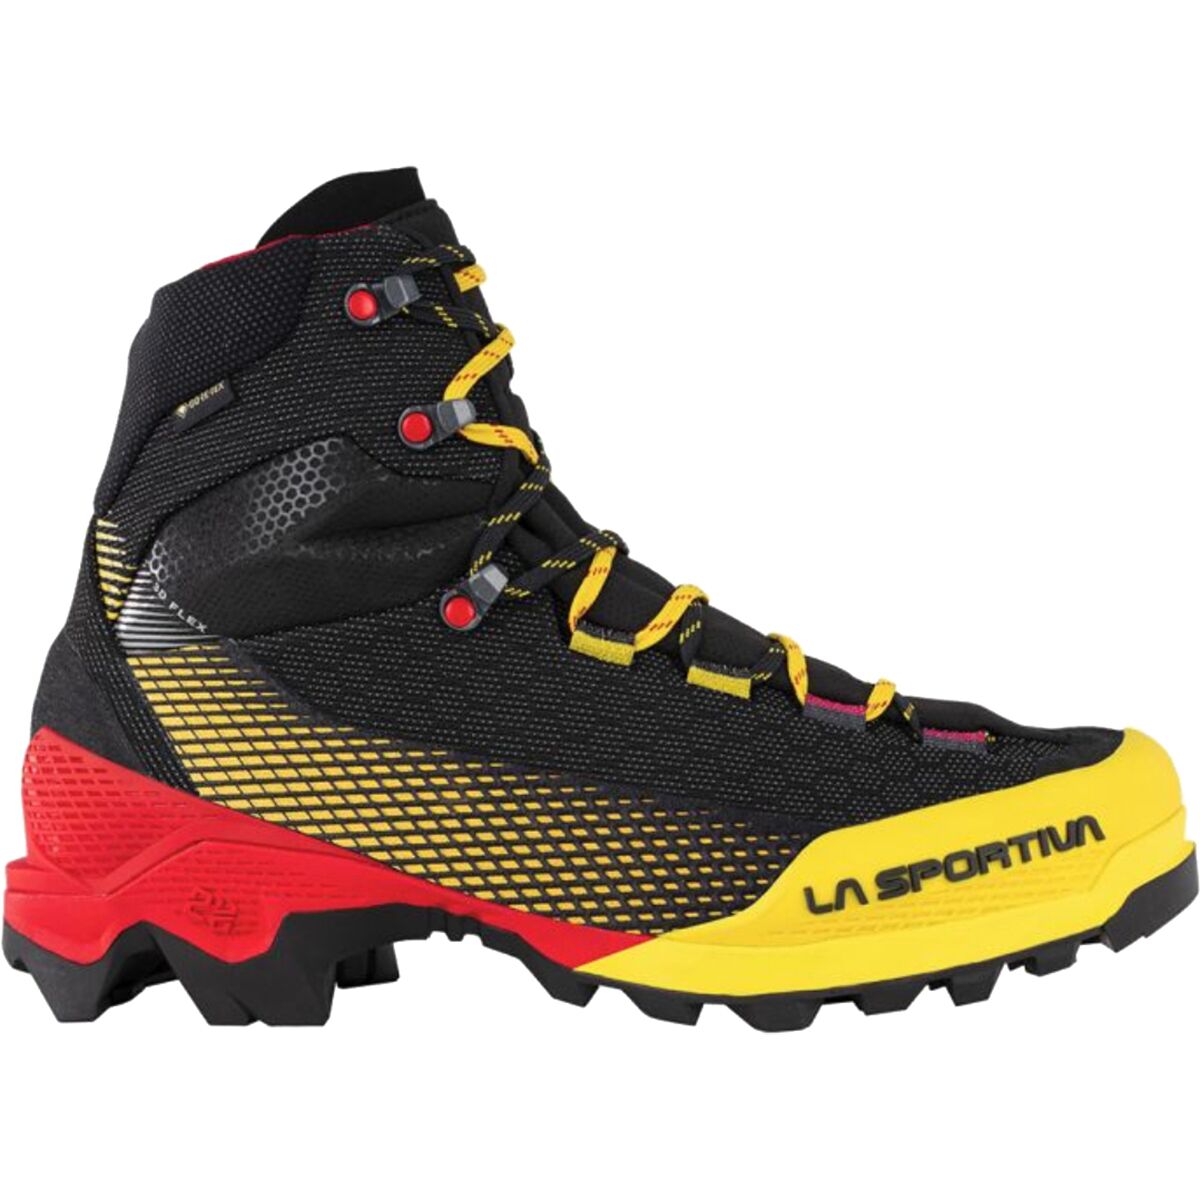 La Sportiva Aequilibrium ST GTX Mountaineering Boot - Men's